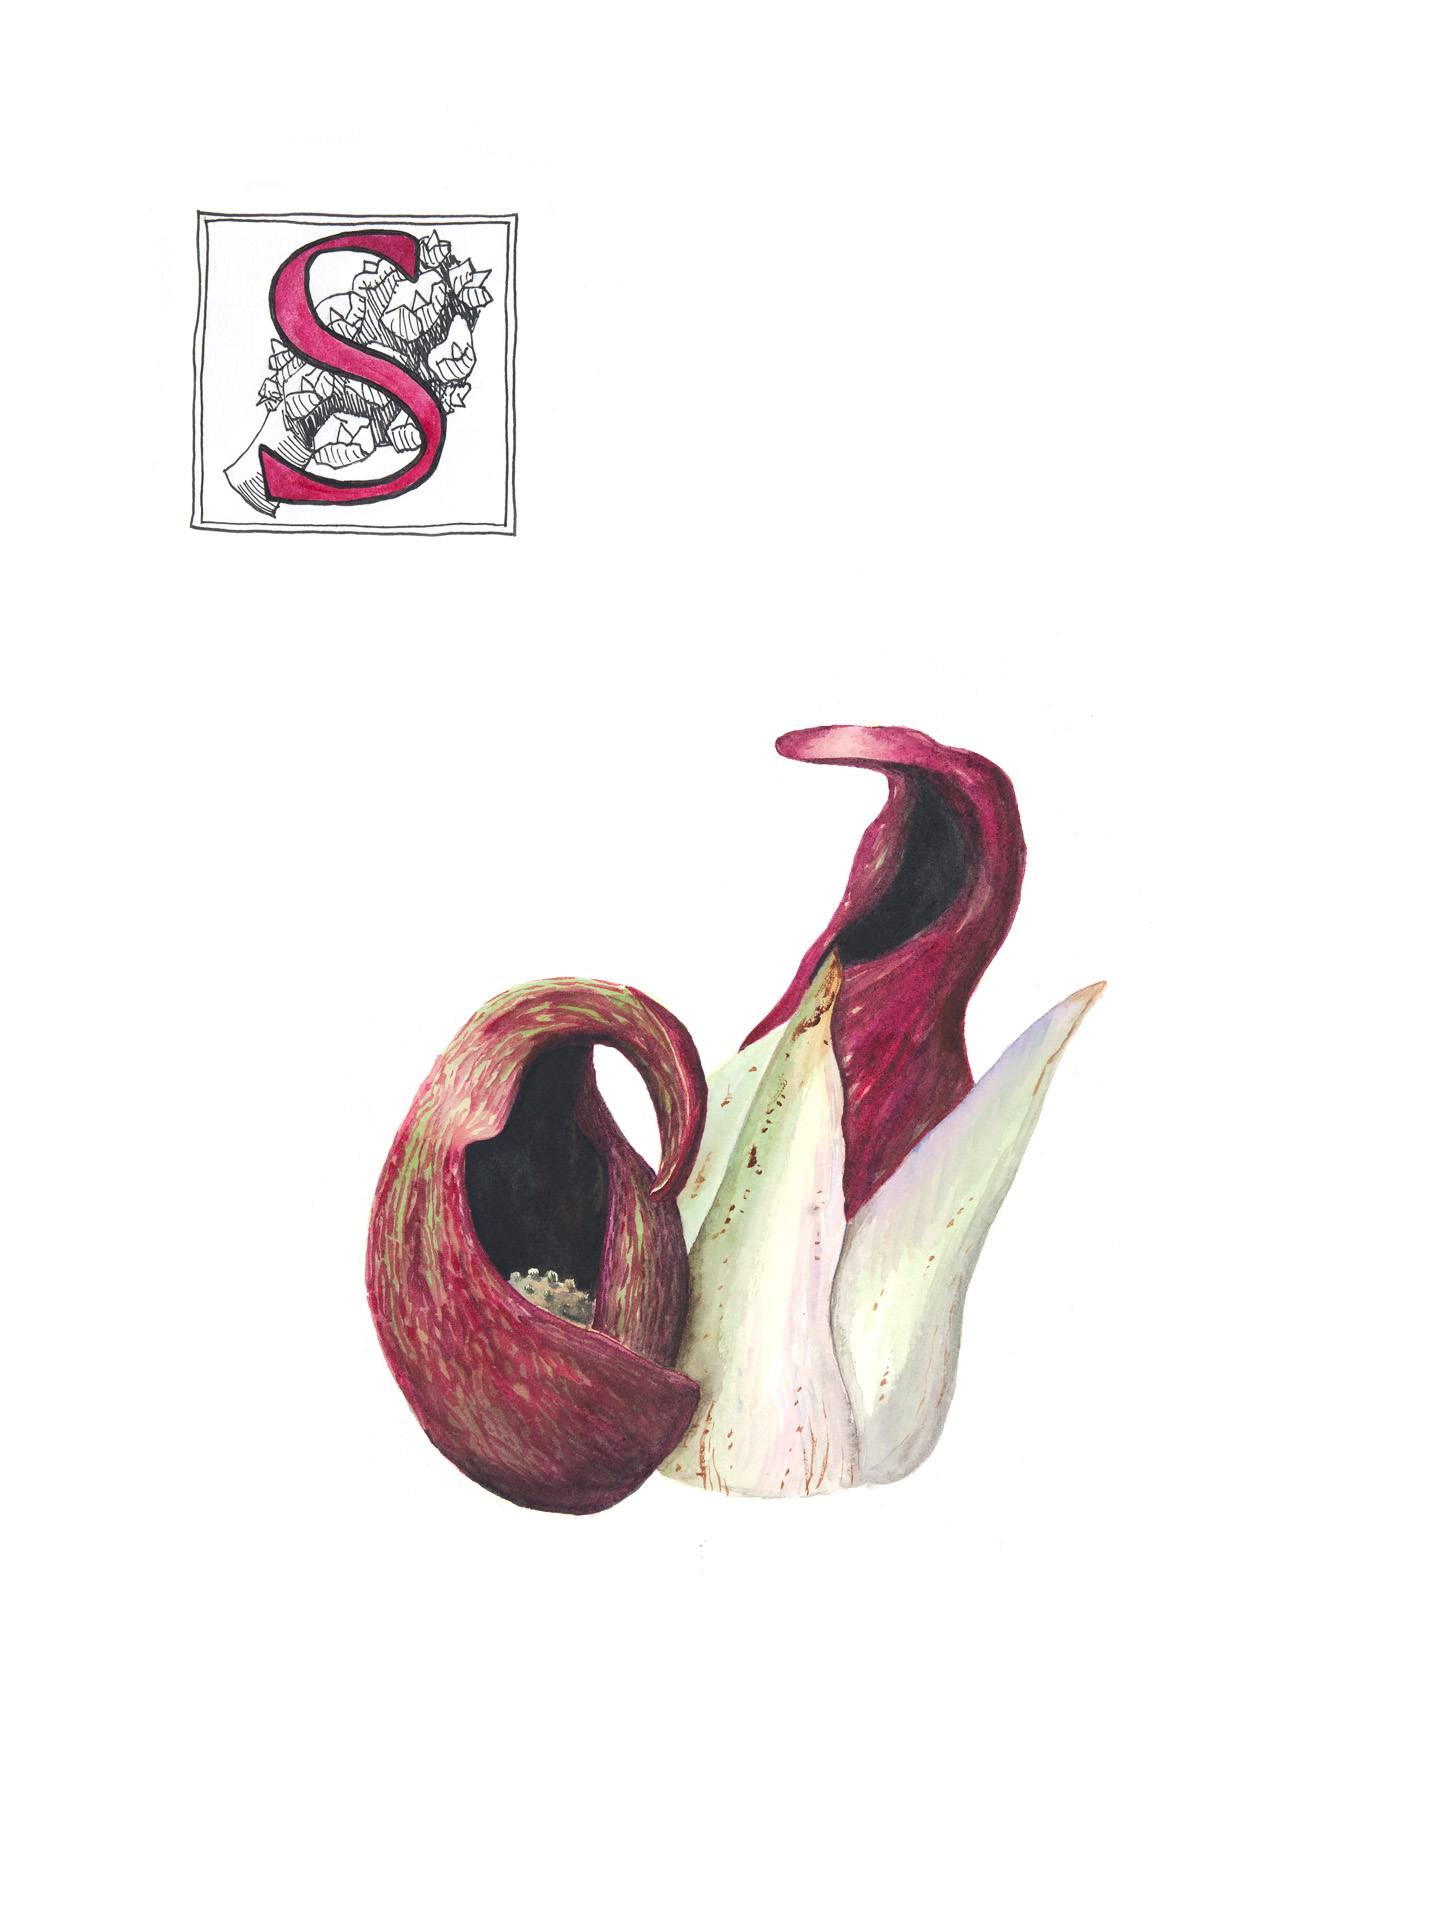 Skunk cabbage, Symplocarpus foetidus, Watercolor by Beth Skwarecki